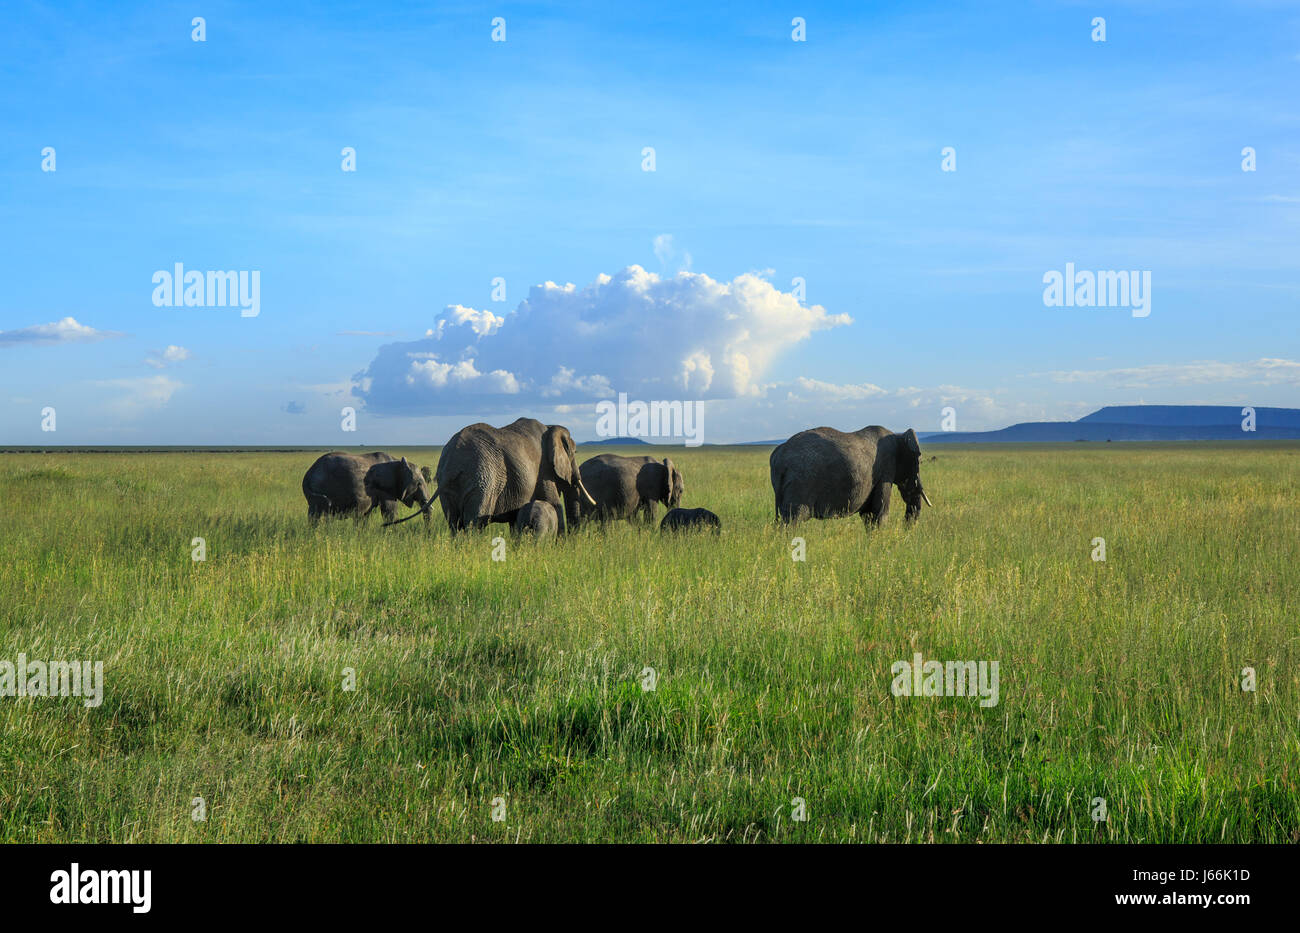 Un éléphant d'Afrique matriarche entraîne ses troupeaux dans la savane à la recherche de nourriture ou d'eau dans un classique 'Out of Africa' paysage. Banque D'Images